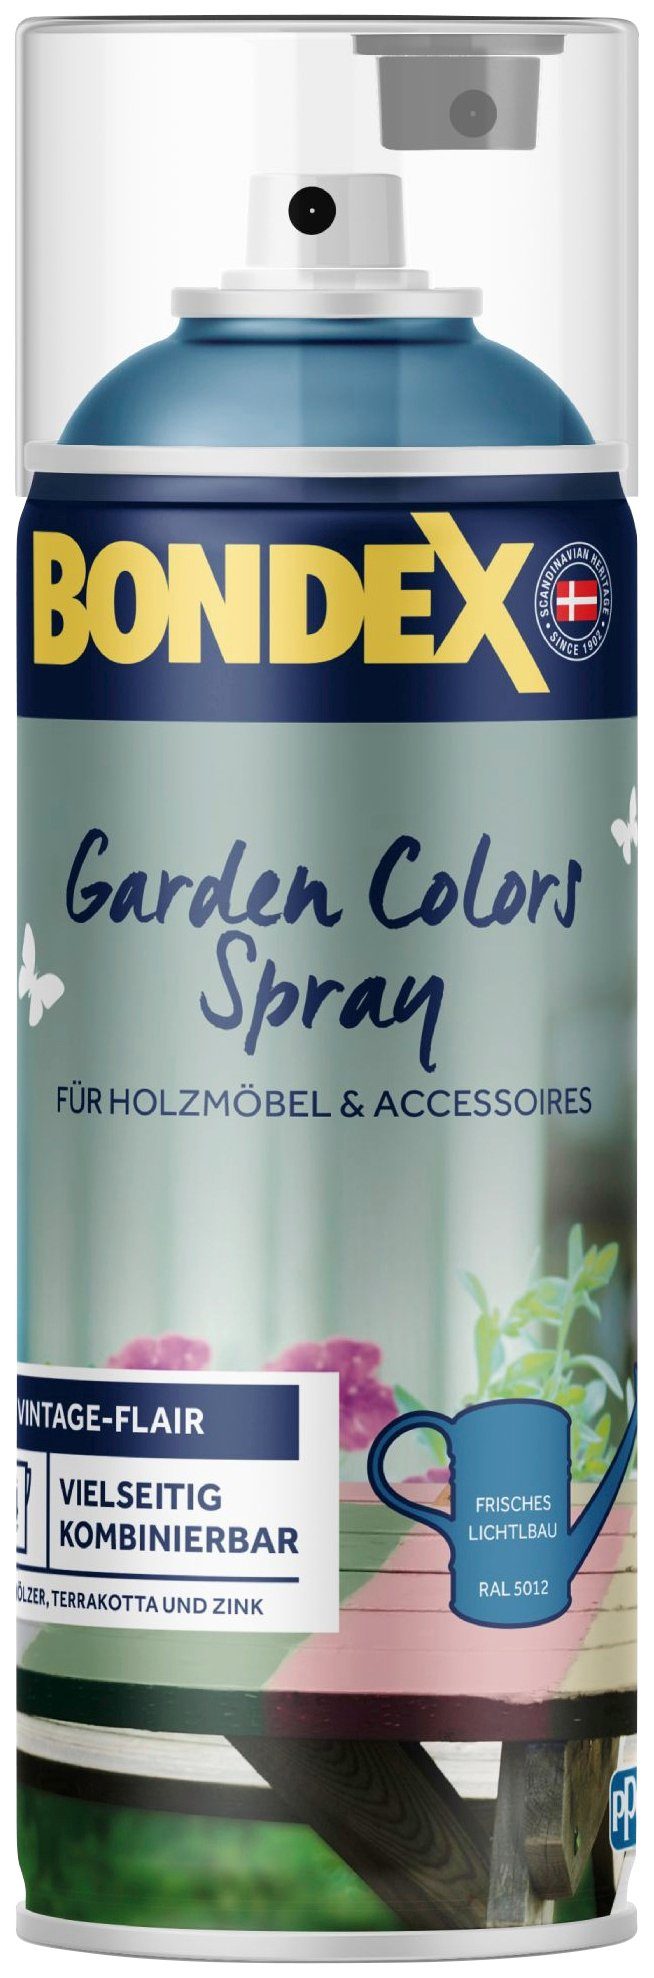 Bondex Wetterschutzfarbe GARDEN COLORS Spray, Zartes Lagunenblau, 0,4 Liter Inhalt Frisches Lichtblau / RAL 5012